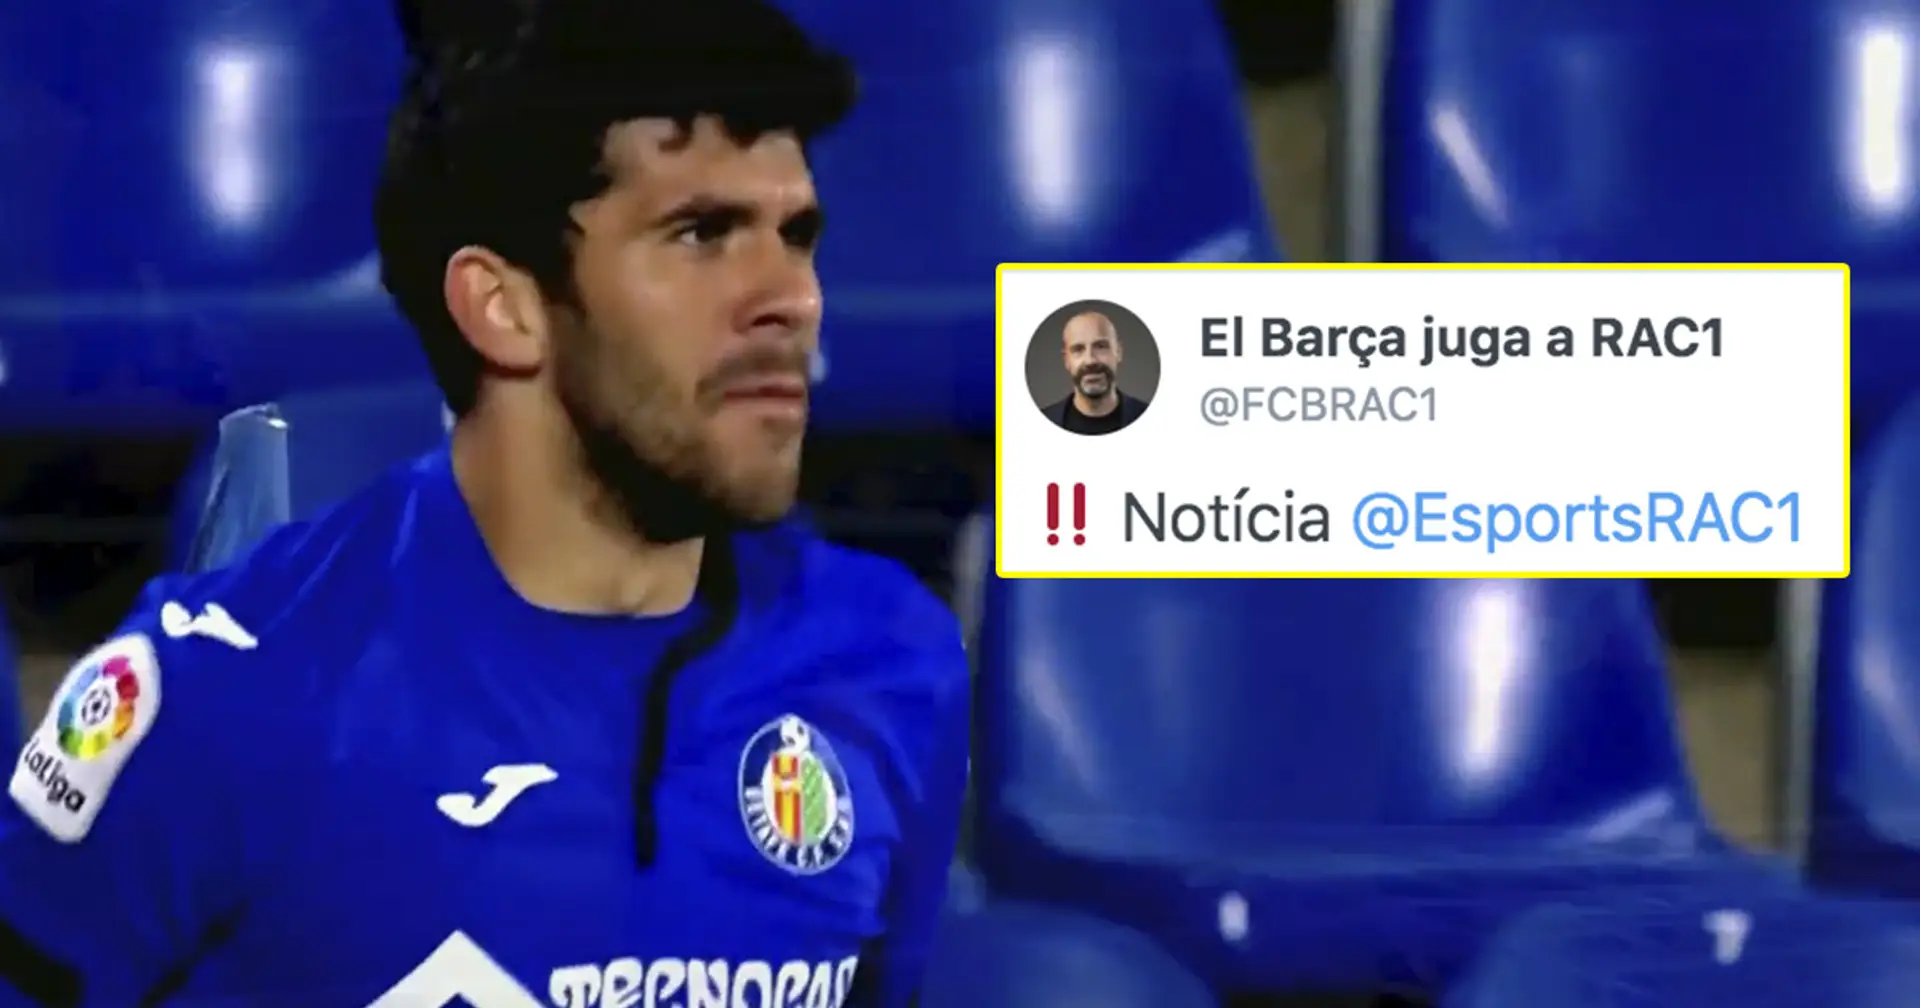 Le Barça parvient à un accord avec Getafe sur le transfert d'Alena, la date d'annonce dévoilée (fiabilité: 5 étoiles)